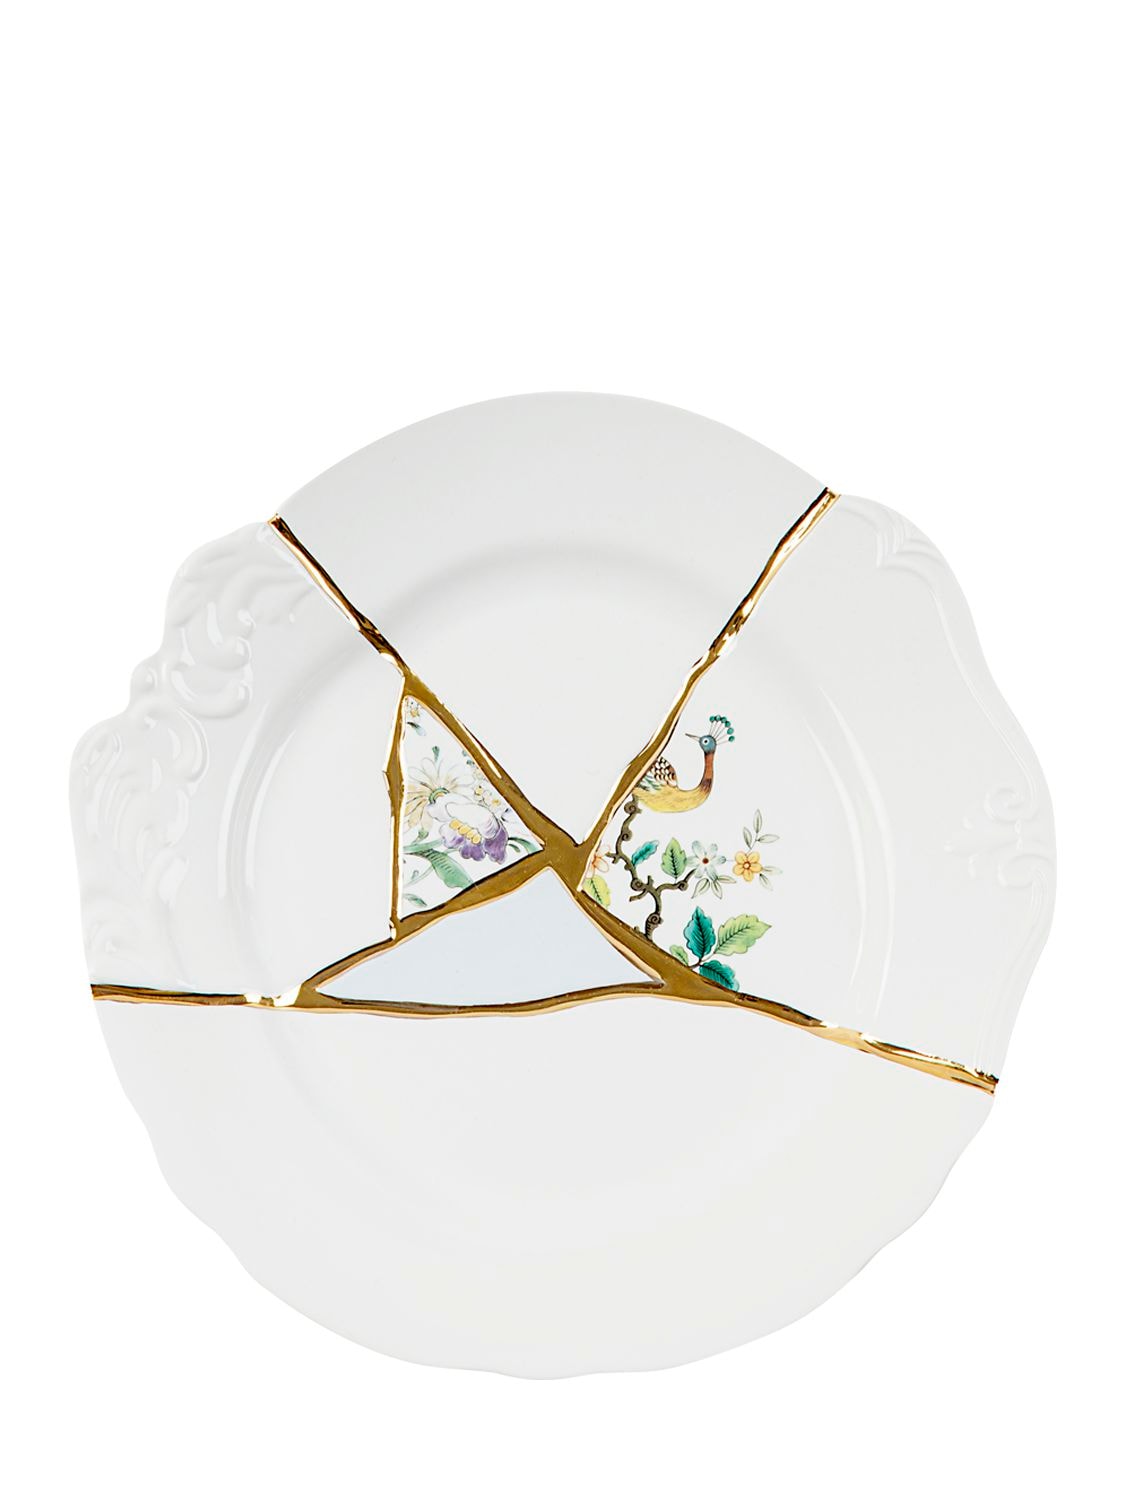 Seletti Kintsugi Porcelain Dinner Plate In Multicolor